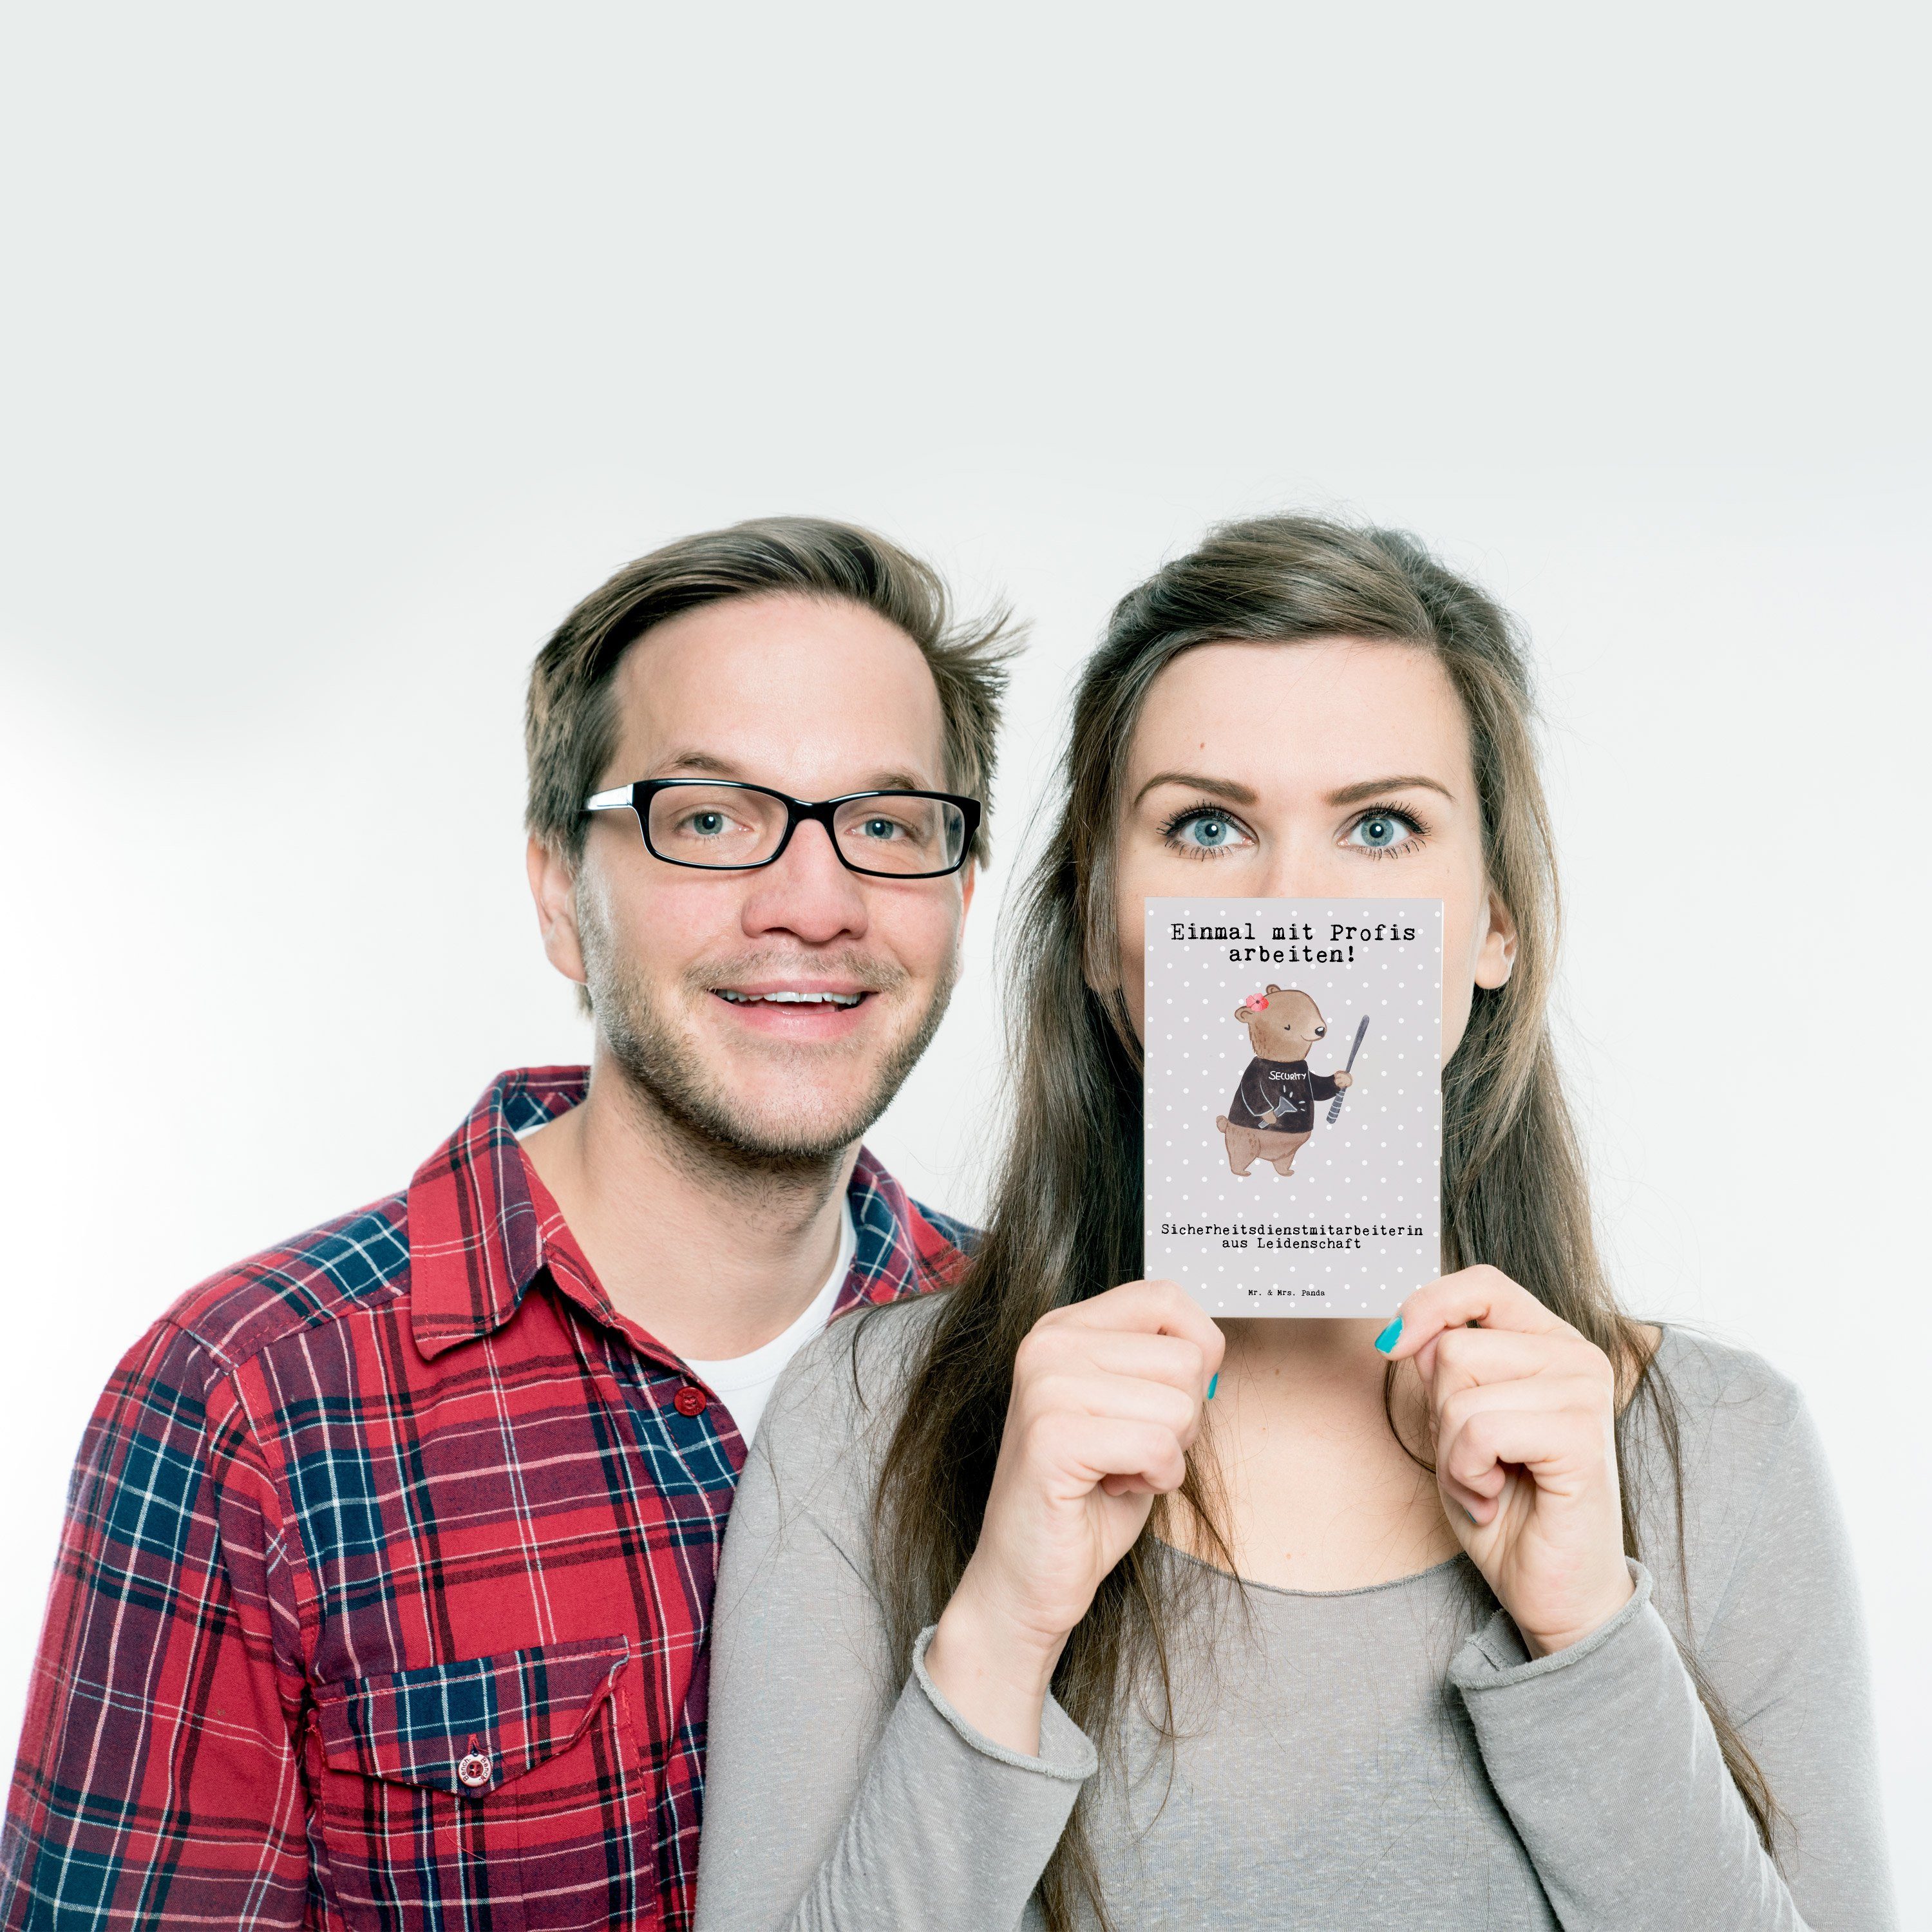 Mr. & Mrs. Panda - Grau Pastell Sicherheitsdienstmitarbeiterin Leidenschaft Postkarte - Gesc aus